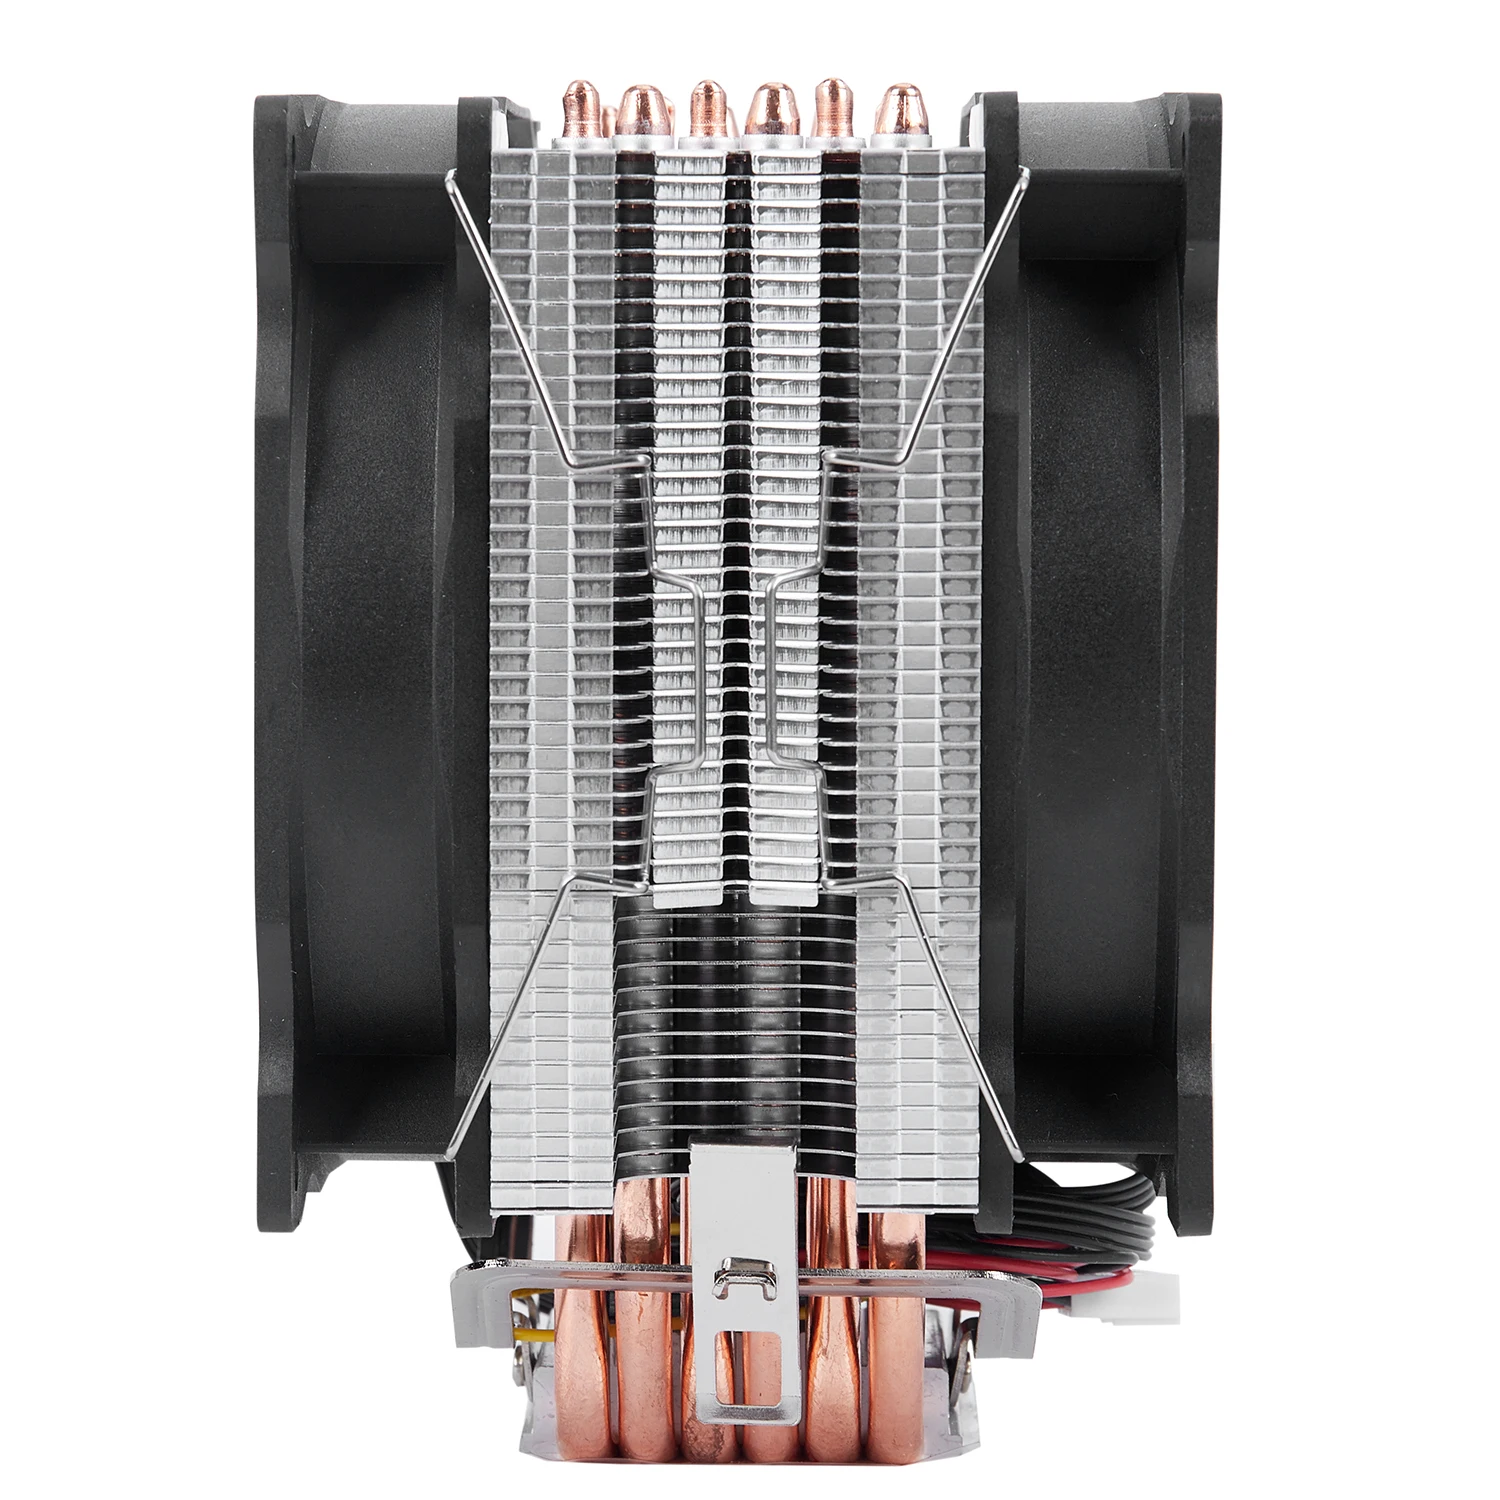 Снеговик 4PIN кулер для процессора 6 тепловых труб двойные вентиляторы охлаждения 12 см вентилятор LGA775 1151 115x1366 Поддержка Intel AMD